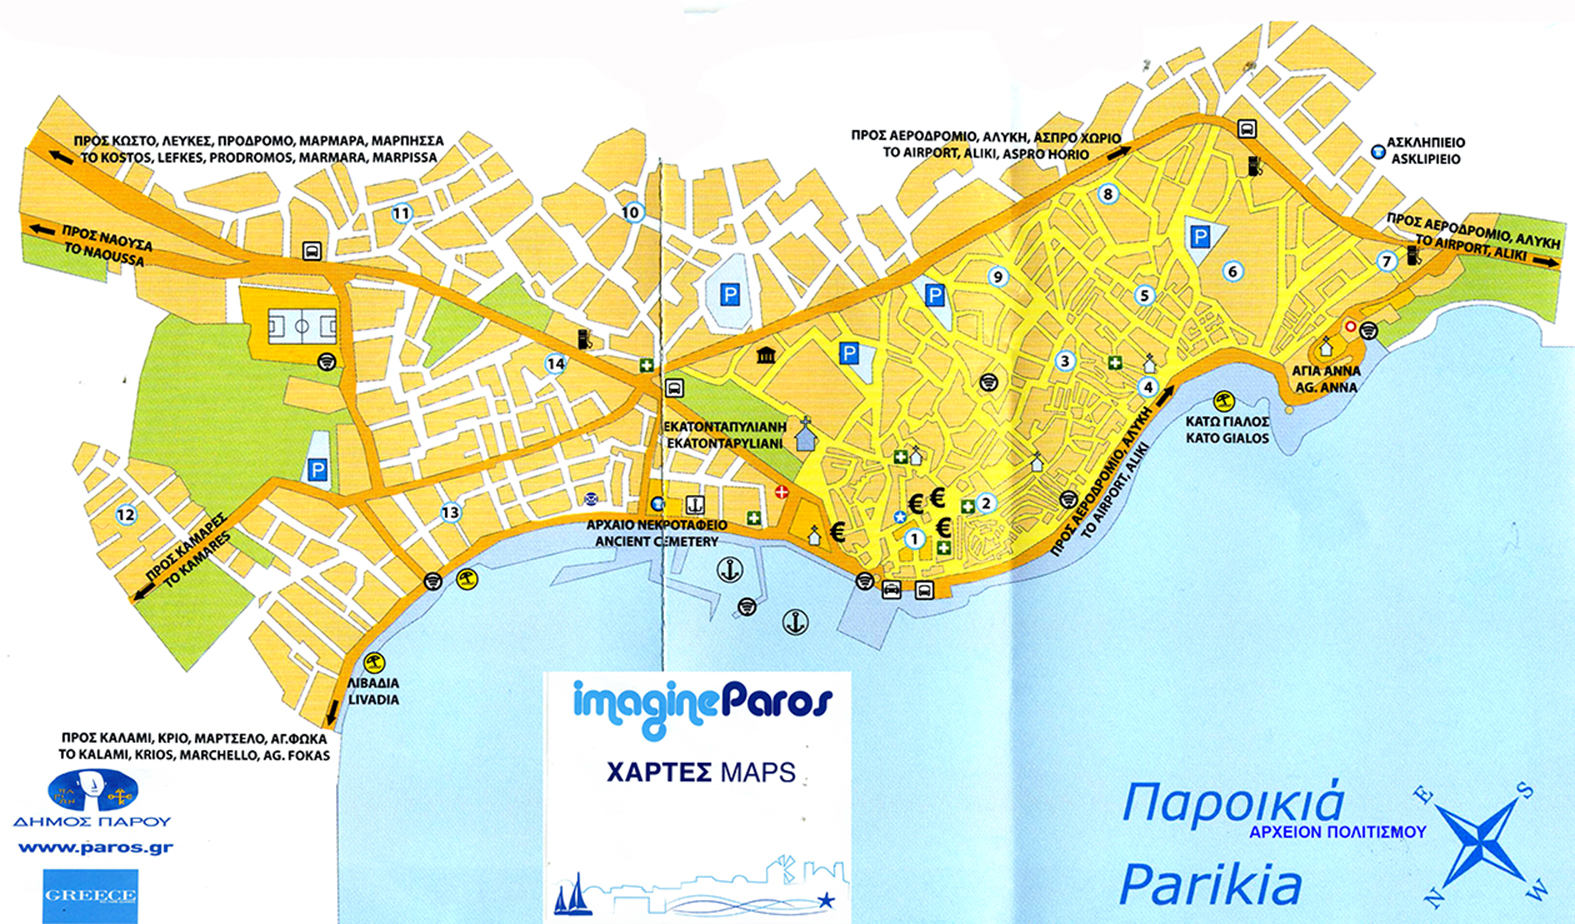 Χάρτης της Παροικιάς Πάρου Map of Parikia Paros